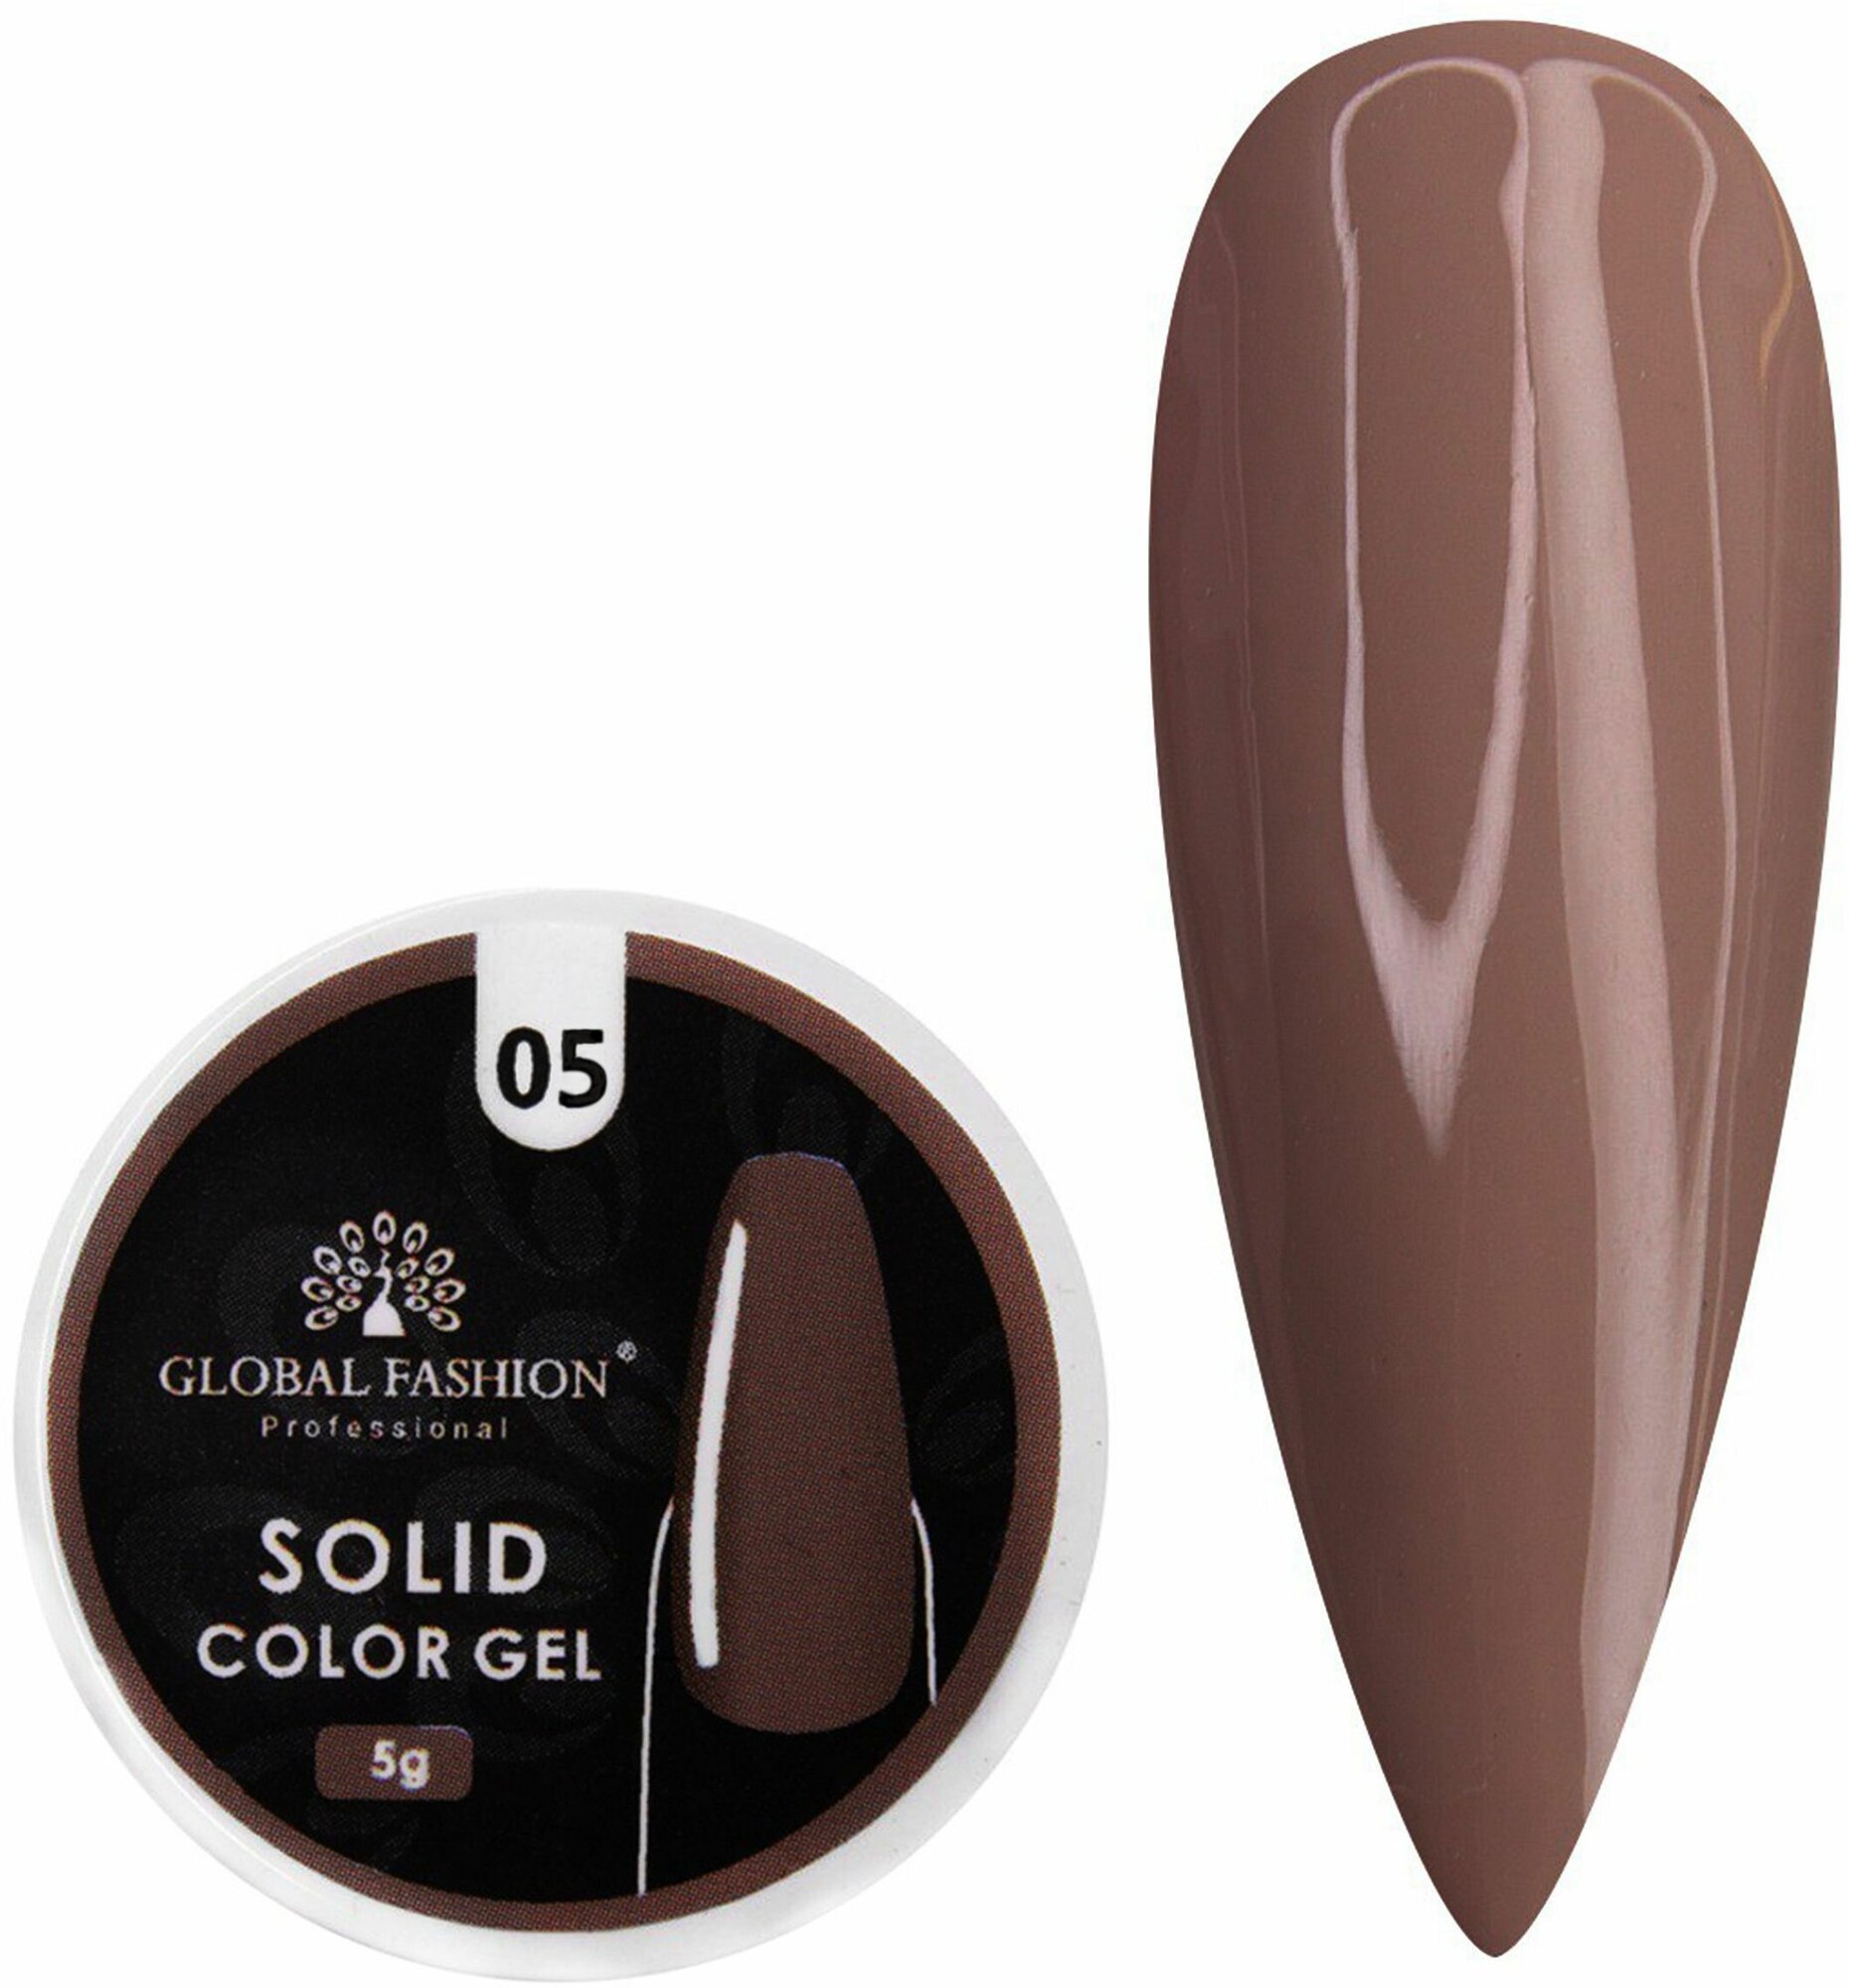 Global Fashion Гель-краска повышенной плотности для рисования и дизайна ногтей, Solid color gel, 5 гр / 05